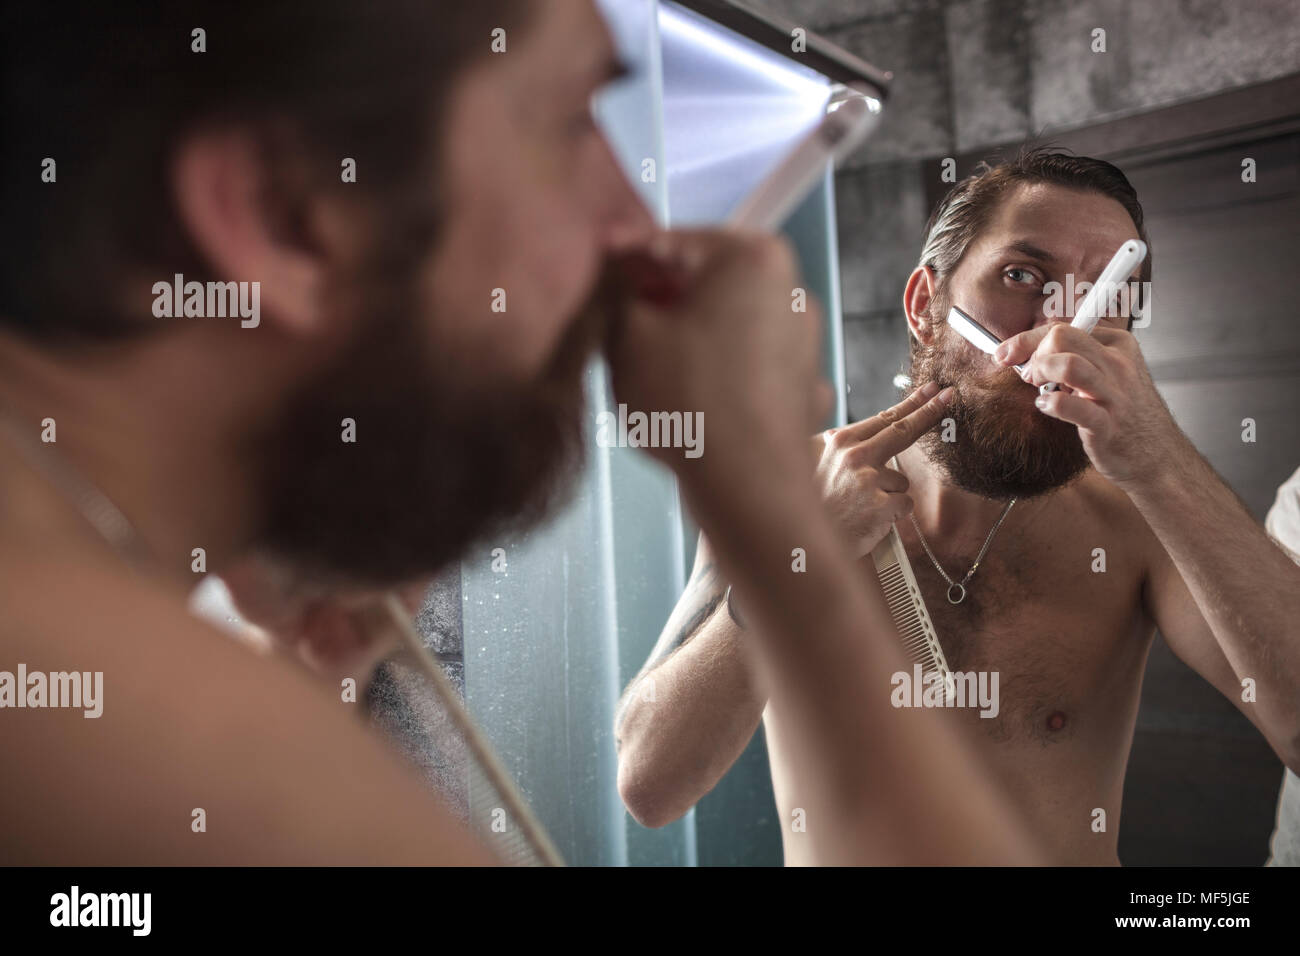 Retrato del hombre barbado mirando su imagen reflejada durante el afeitado Foto de stock